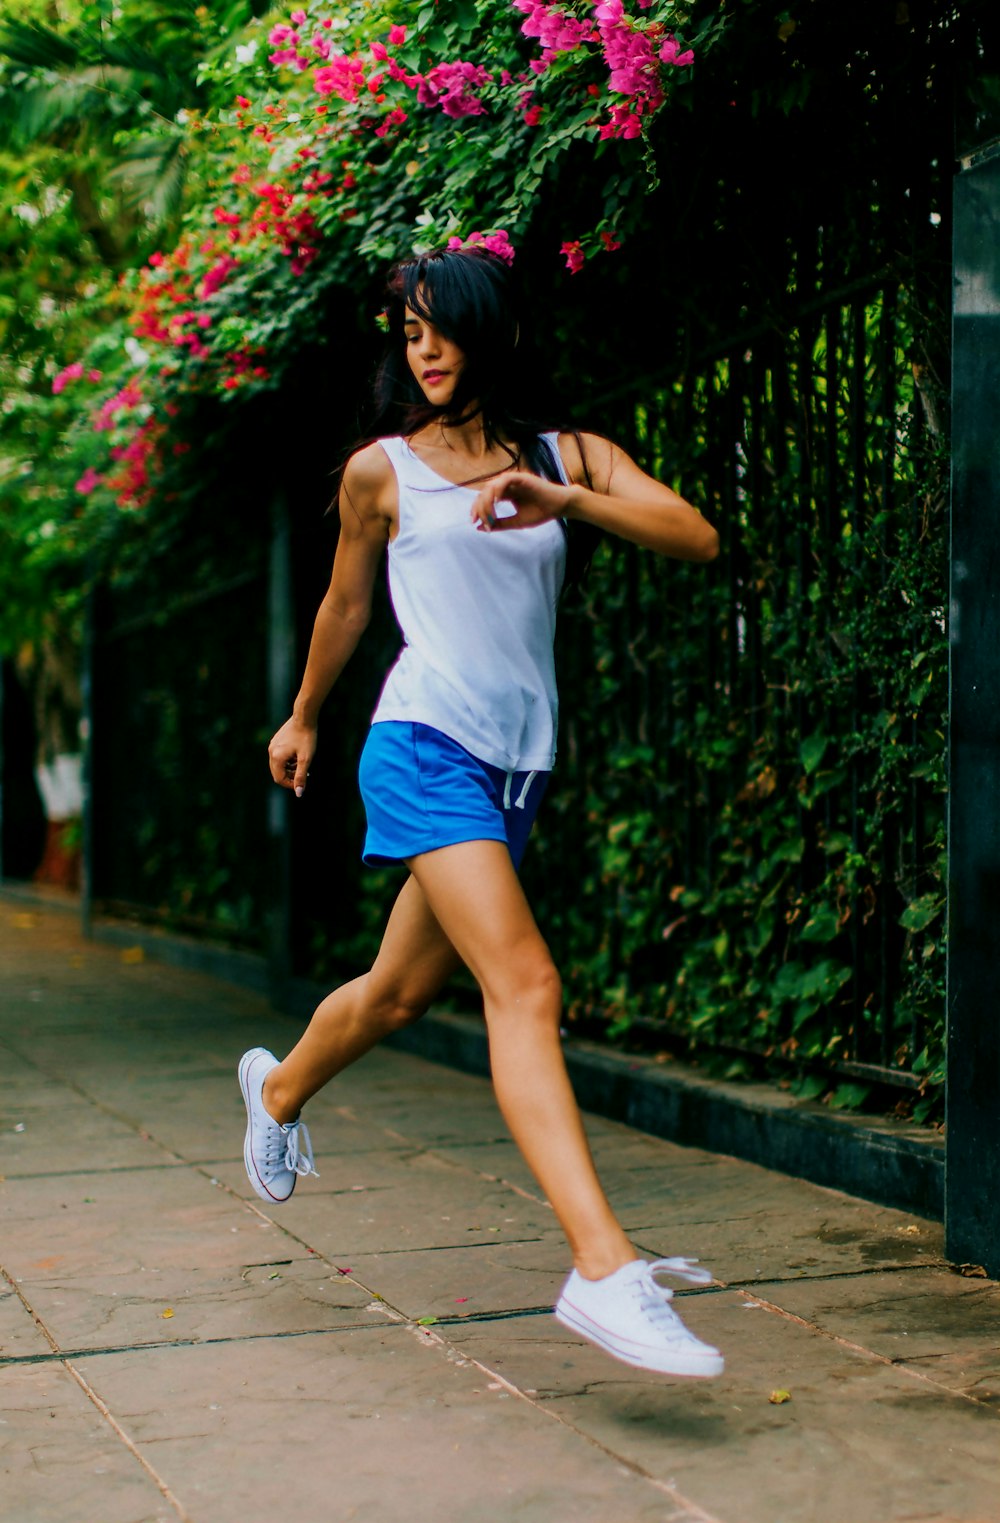 Imágenes de Running Women  Descarga imágenes gratuitas en Unsplash